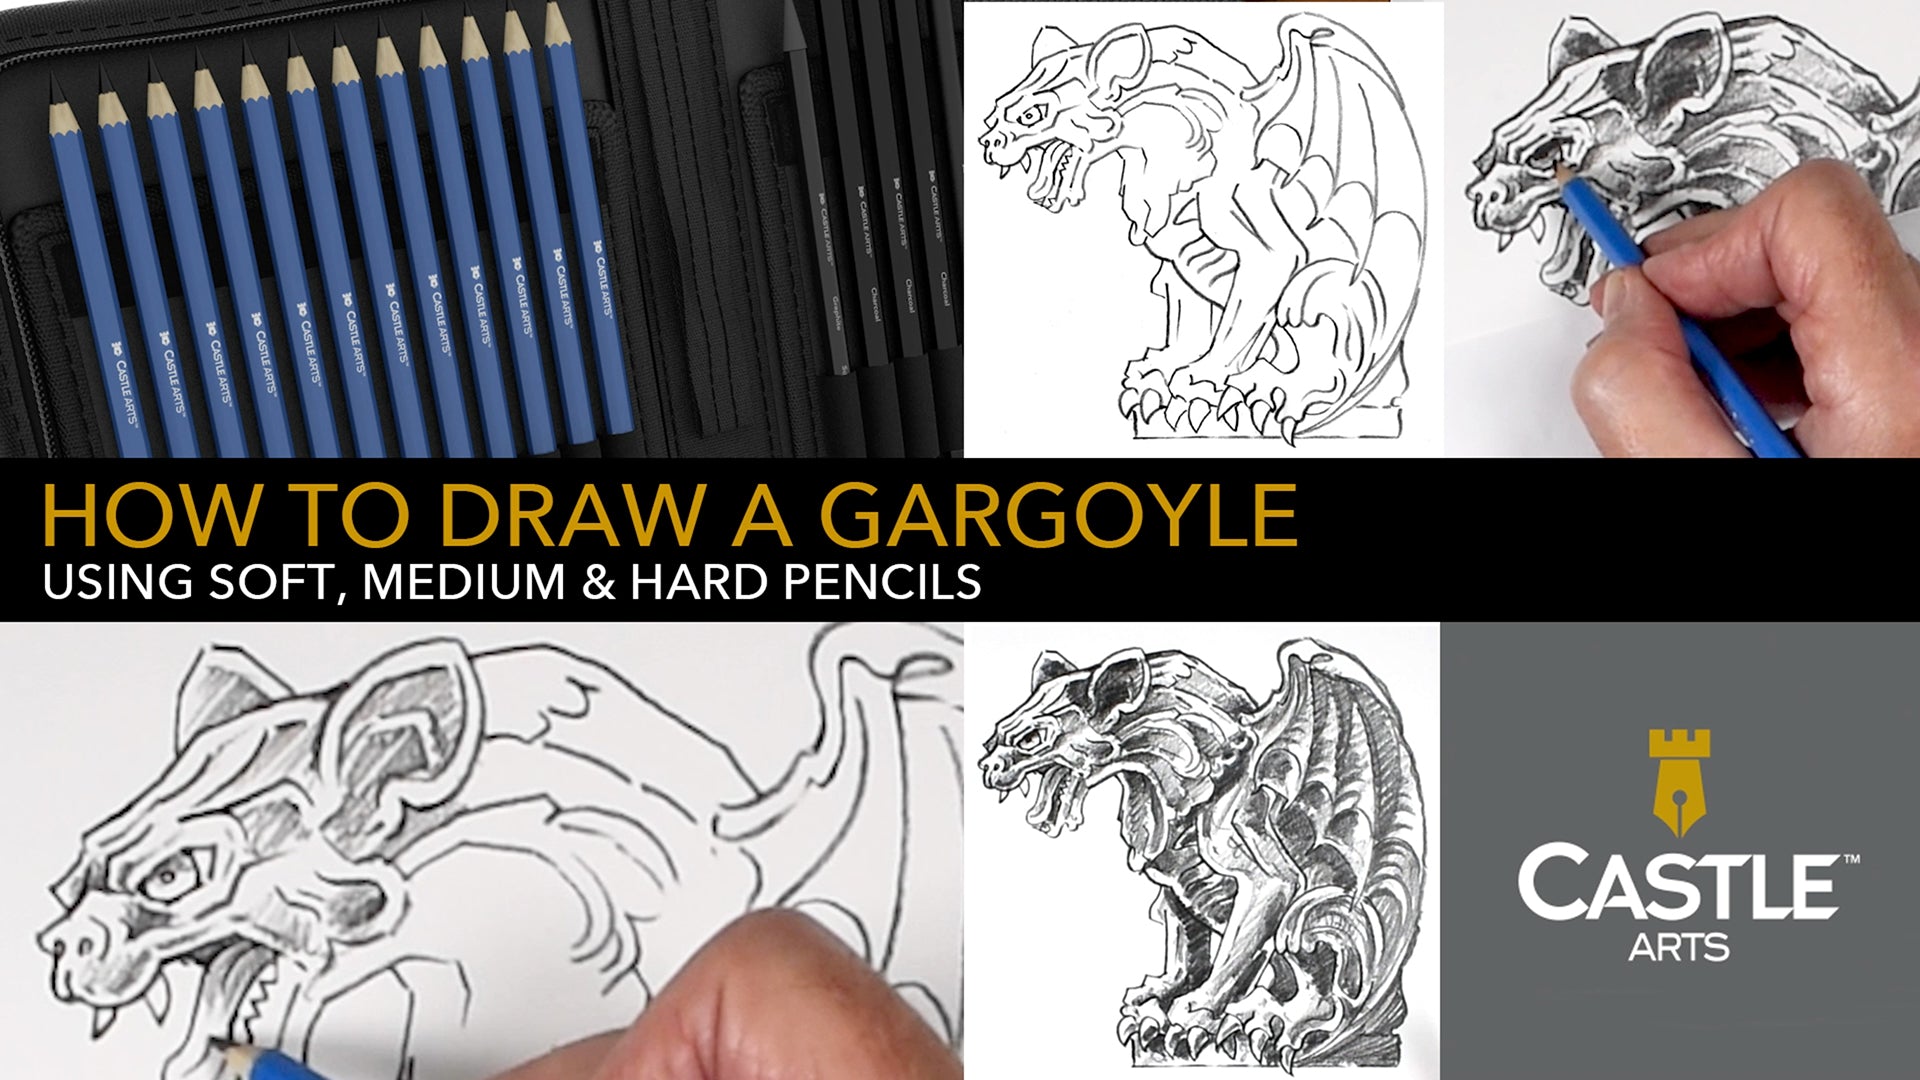 How To Draw A Gargoyle Using Hard, Medium & Soft Graphite Pencils